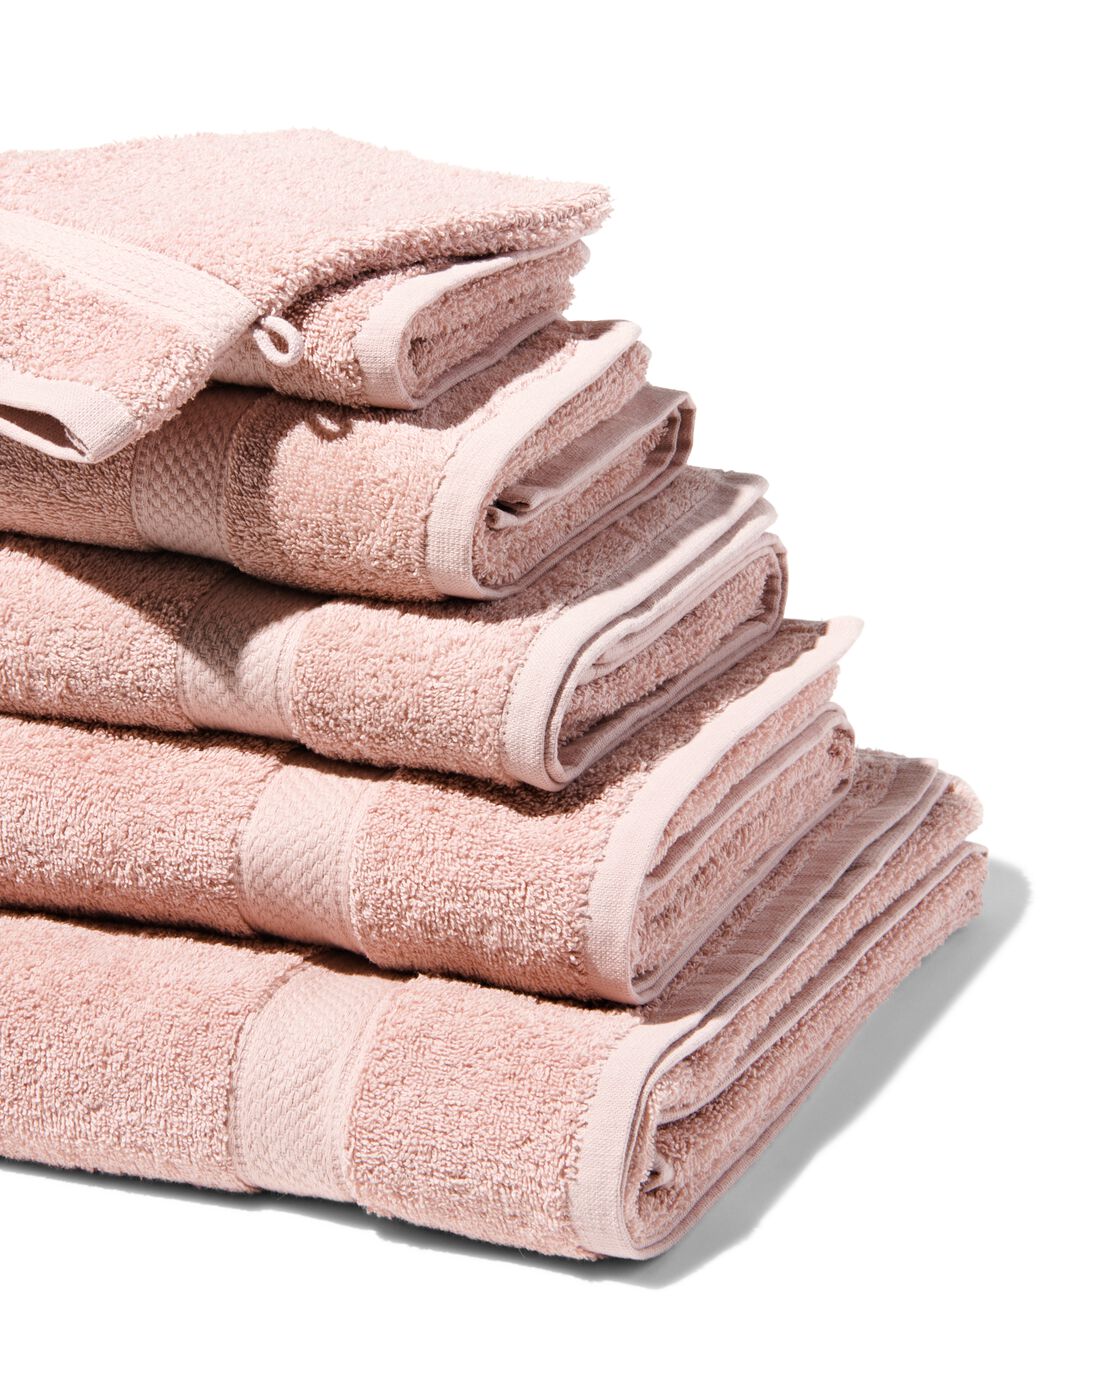 HEMA Handdoeken Zware Kwaliteit Lichtroze (lichtroze)